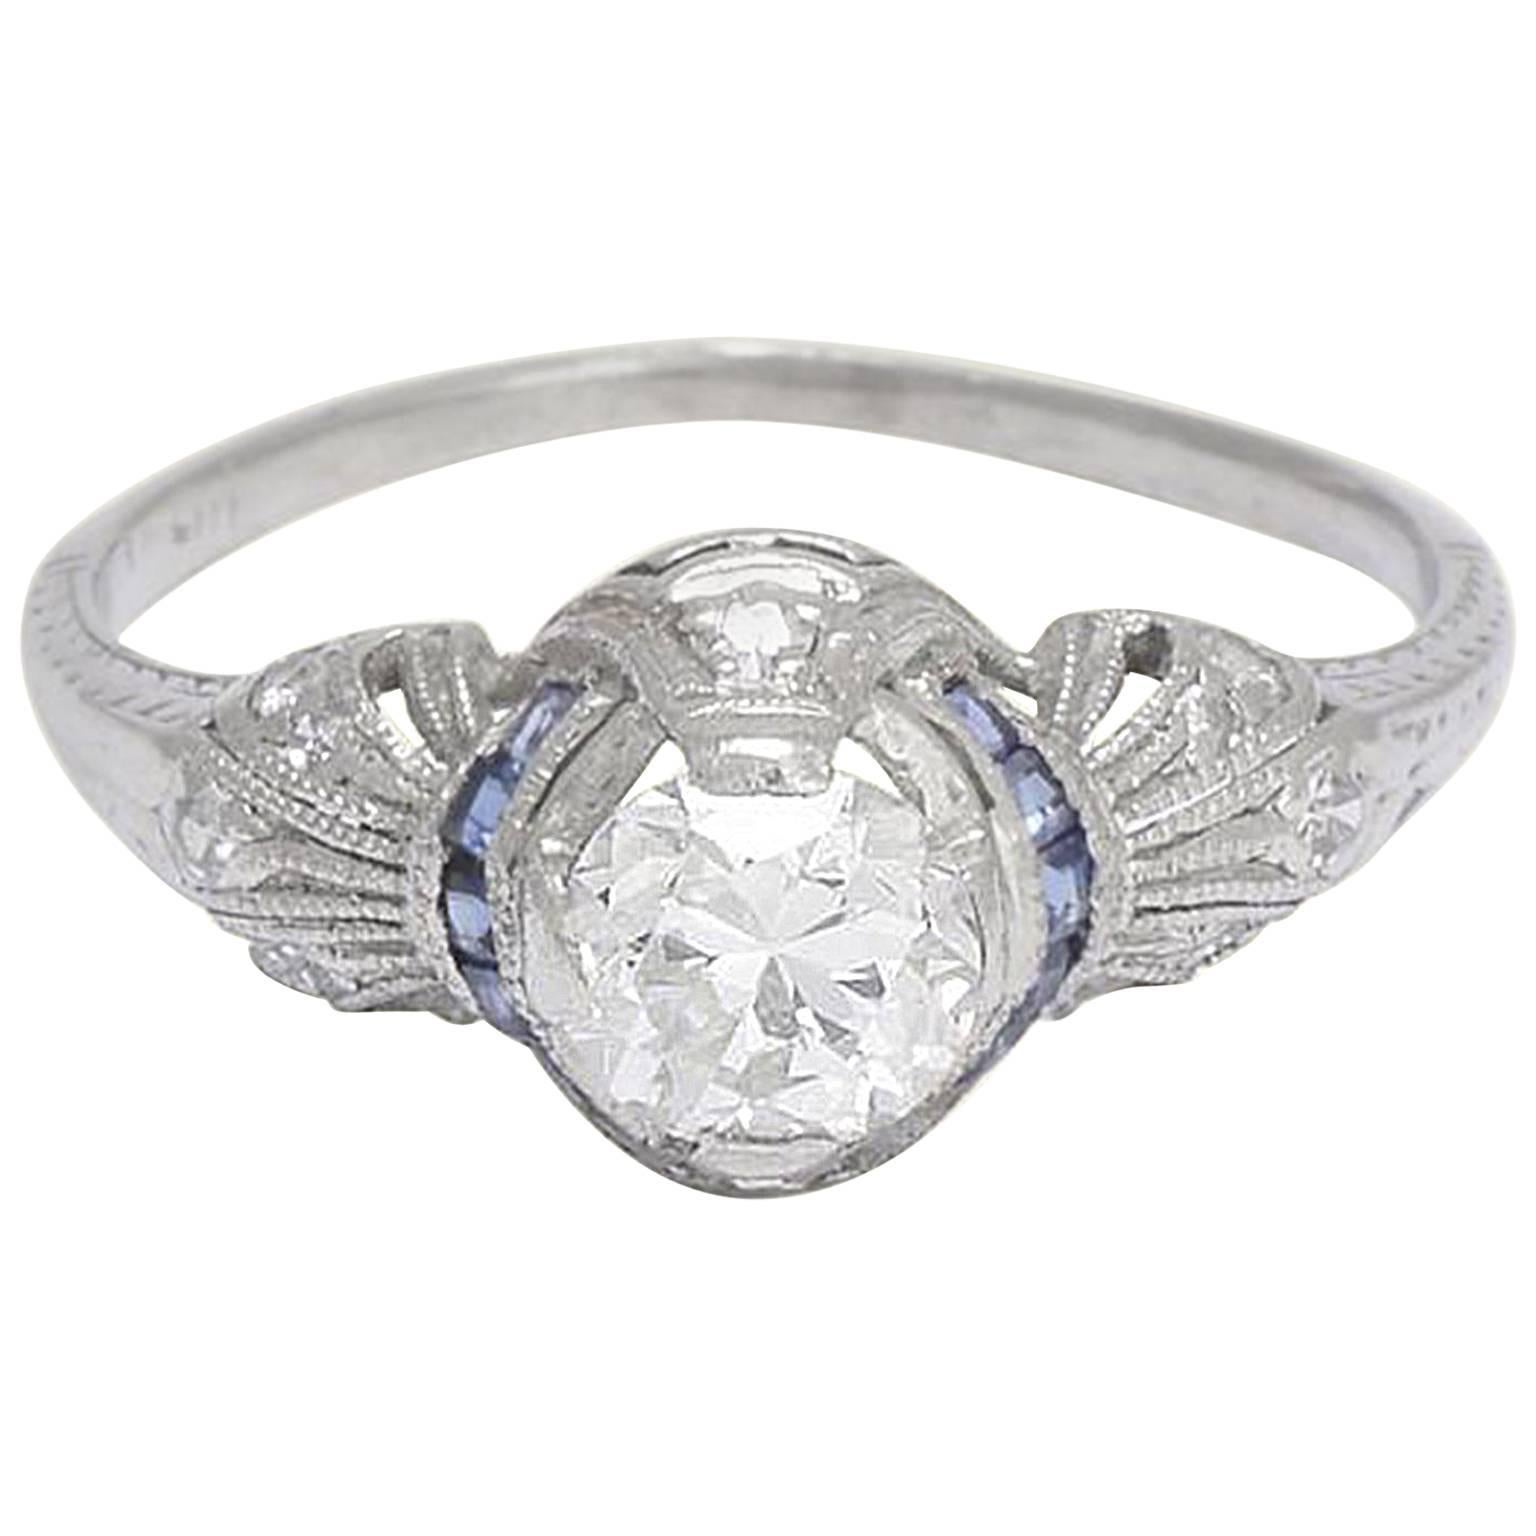 Art Deco Platinum .71 Carat Diamond Engagement Ring with Calibré Cut Sapphires For Sale